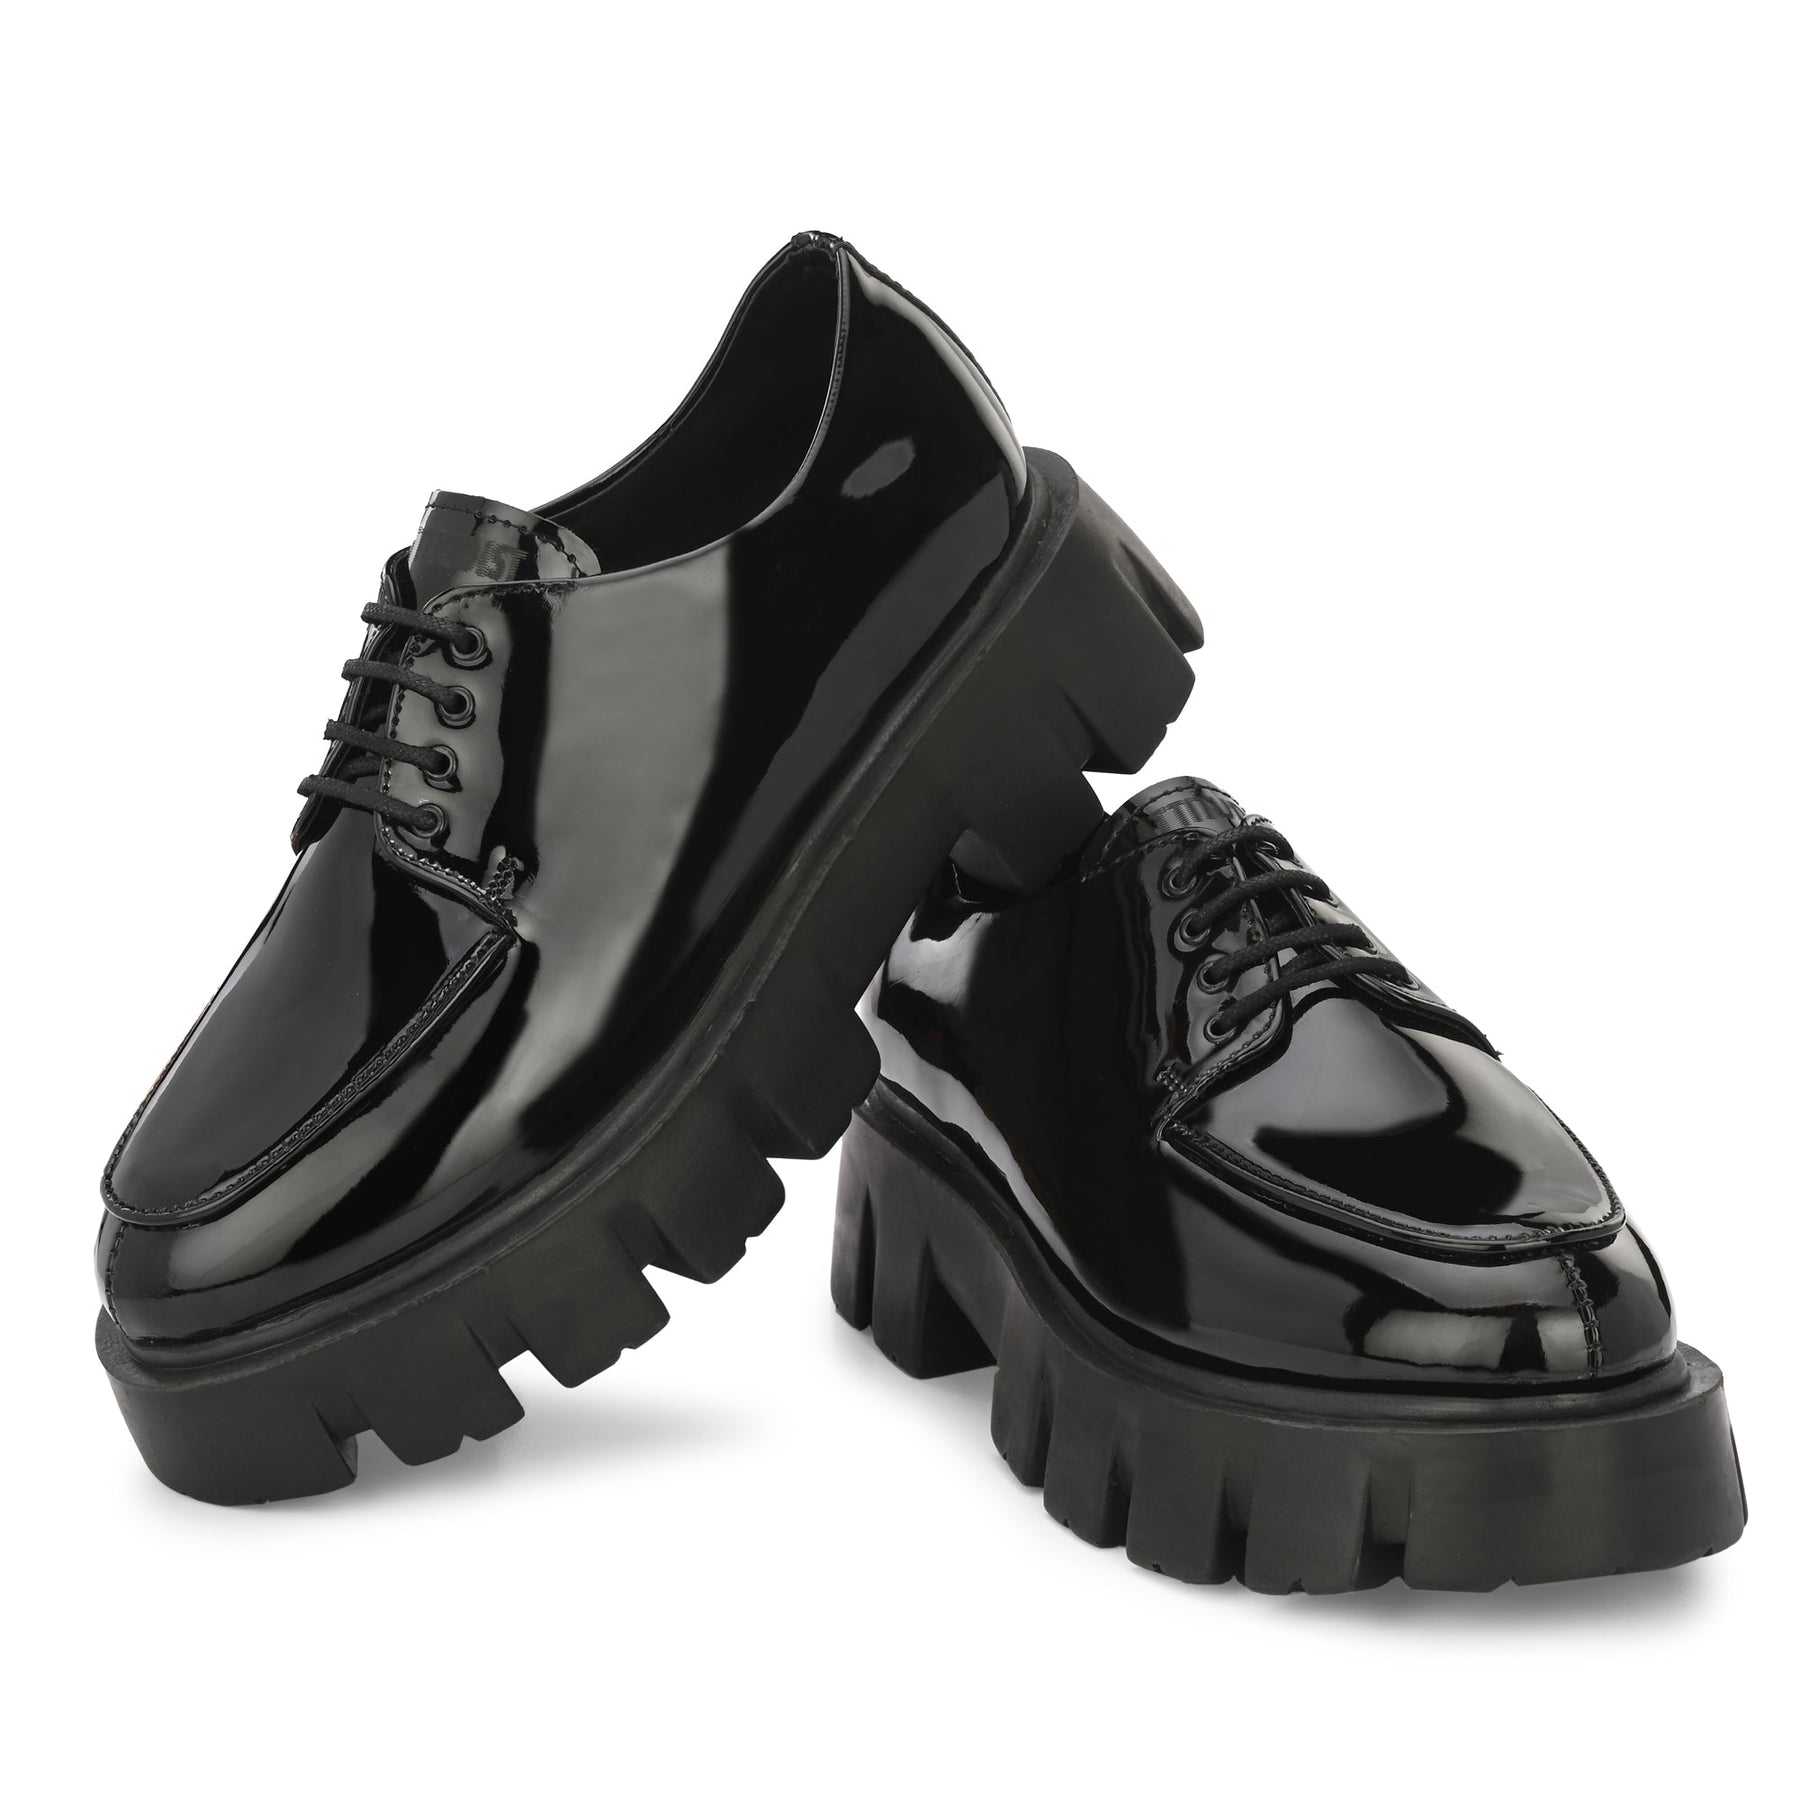 Attitudist Glossy Black High Heel Derby Shoes For Men - ATTITUDIST